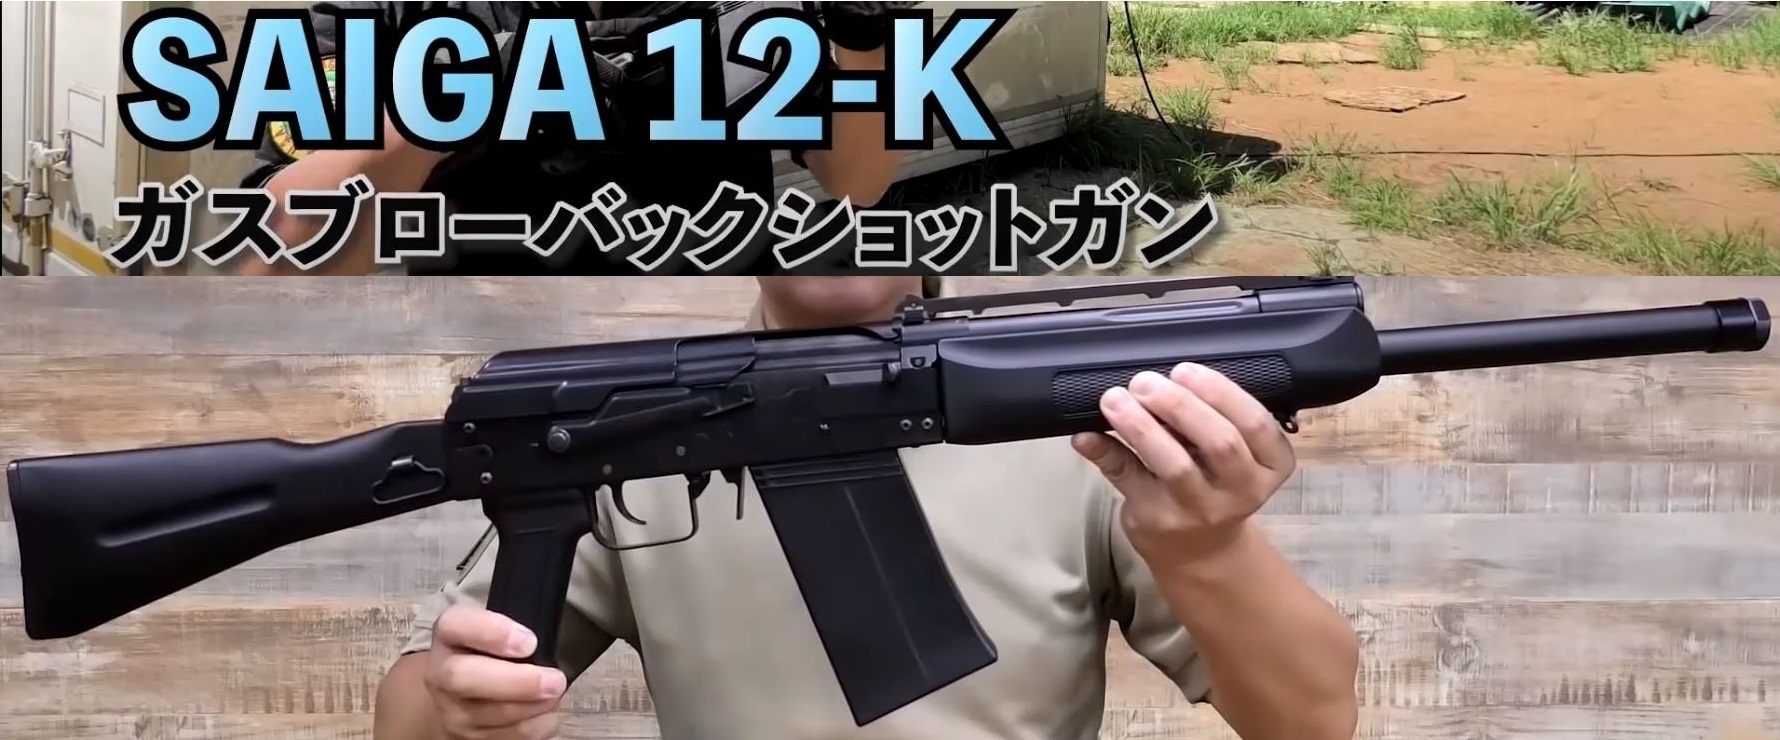 注目の東京マルイ新製品】 AKベースのショットガン「SAIGA 12-K